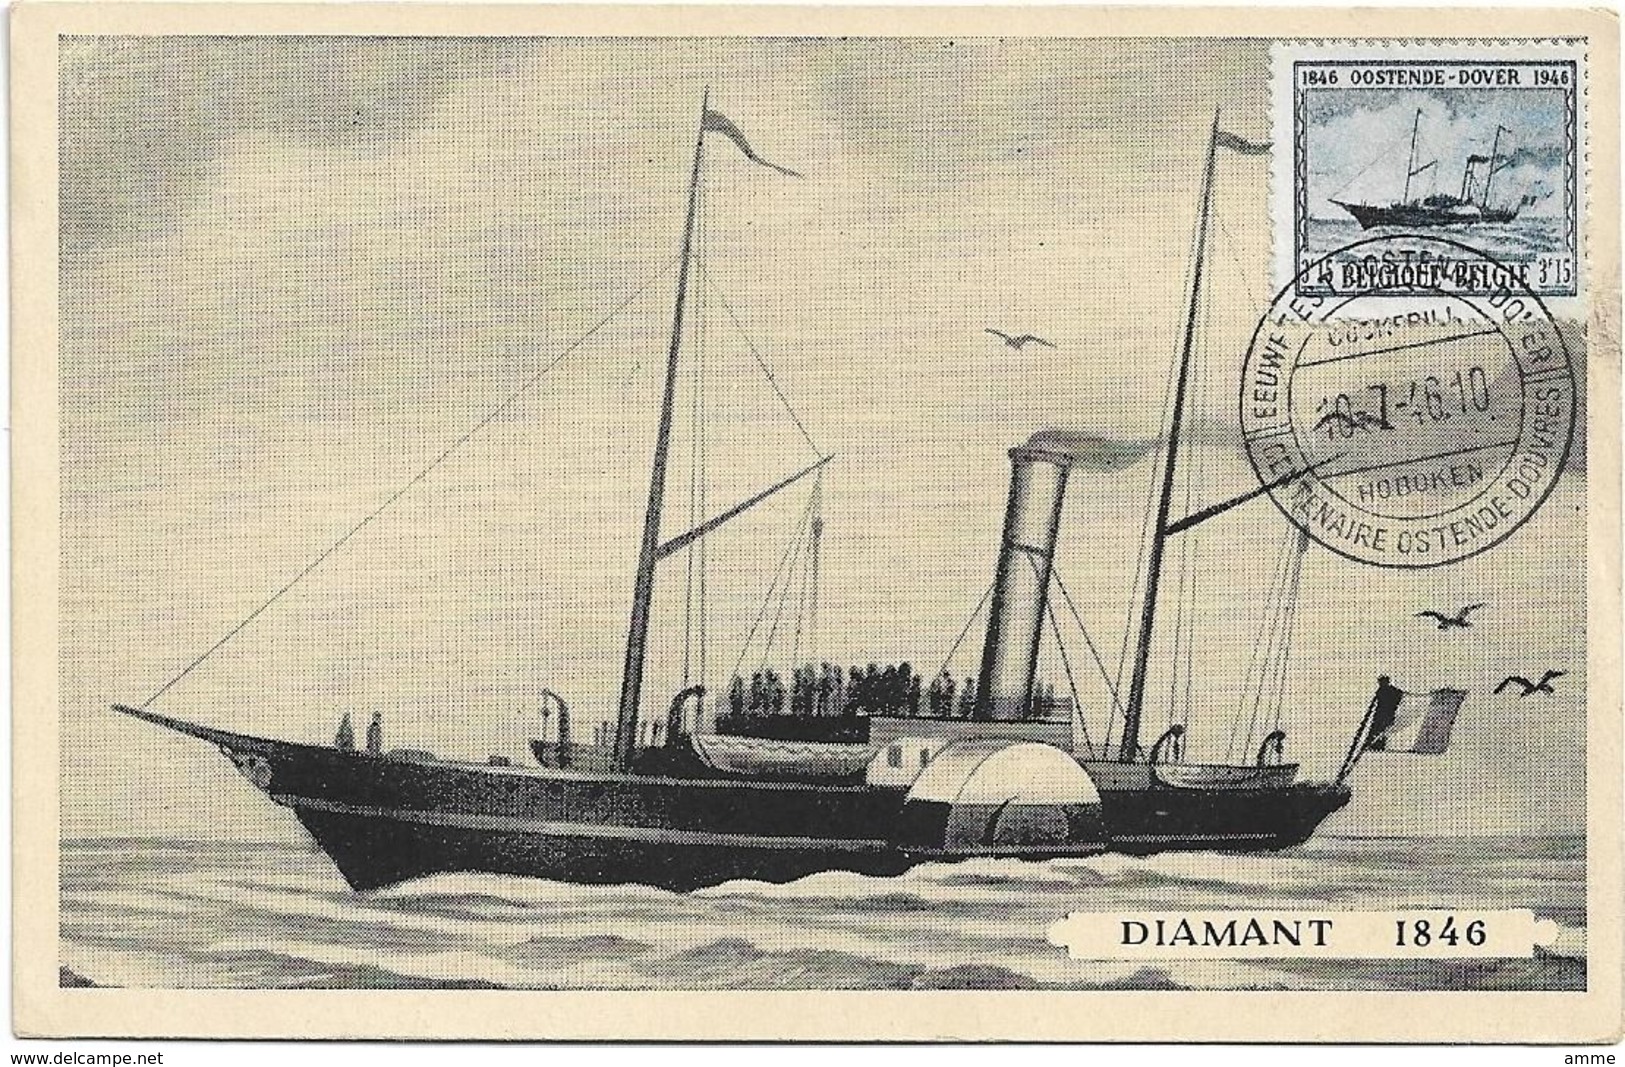 Oostende  *  Eeuwfeest - Centenaire Oostende - Dover 1946  ( Diamant 1846 ) - Schiffspost